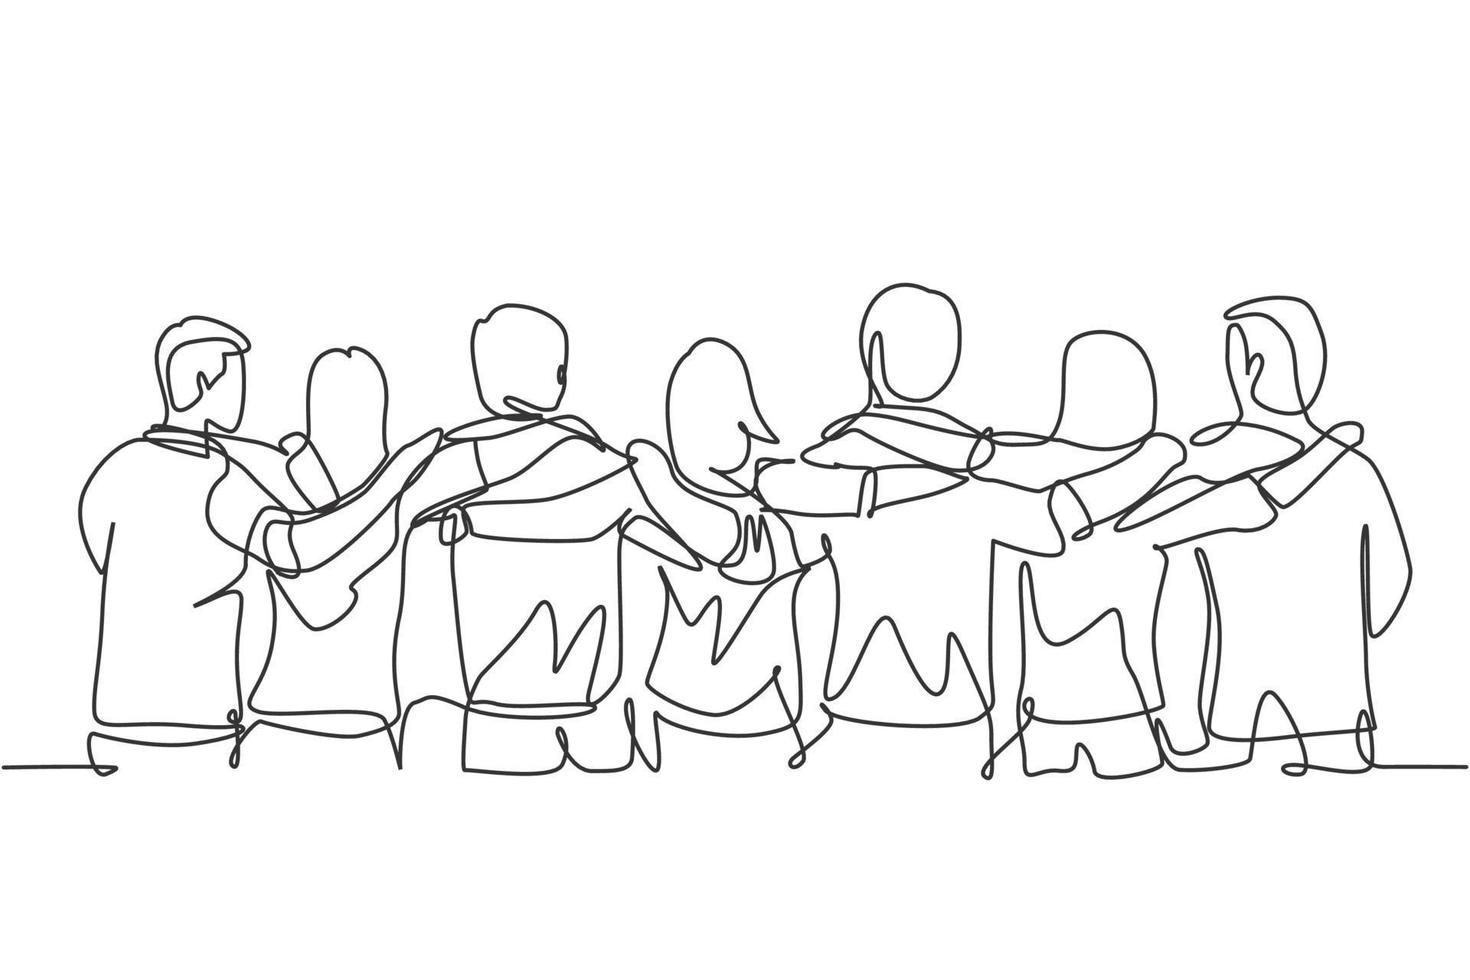 einzelne durchgehende Linienzeichnung über eine Gruppe von Männern und Frauen aus mehreren ethnischen Gruppen, die zusammenstehen, um ihre Freundschaftsbindung zu zeigen. Einheit im Diversity-Konzept eine Linie zeichnen Design-Vektor-Illustration vektor